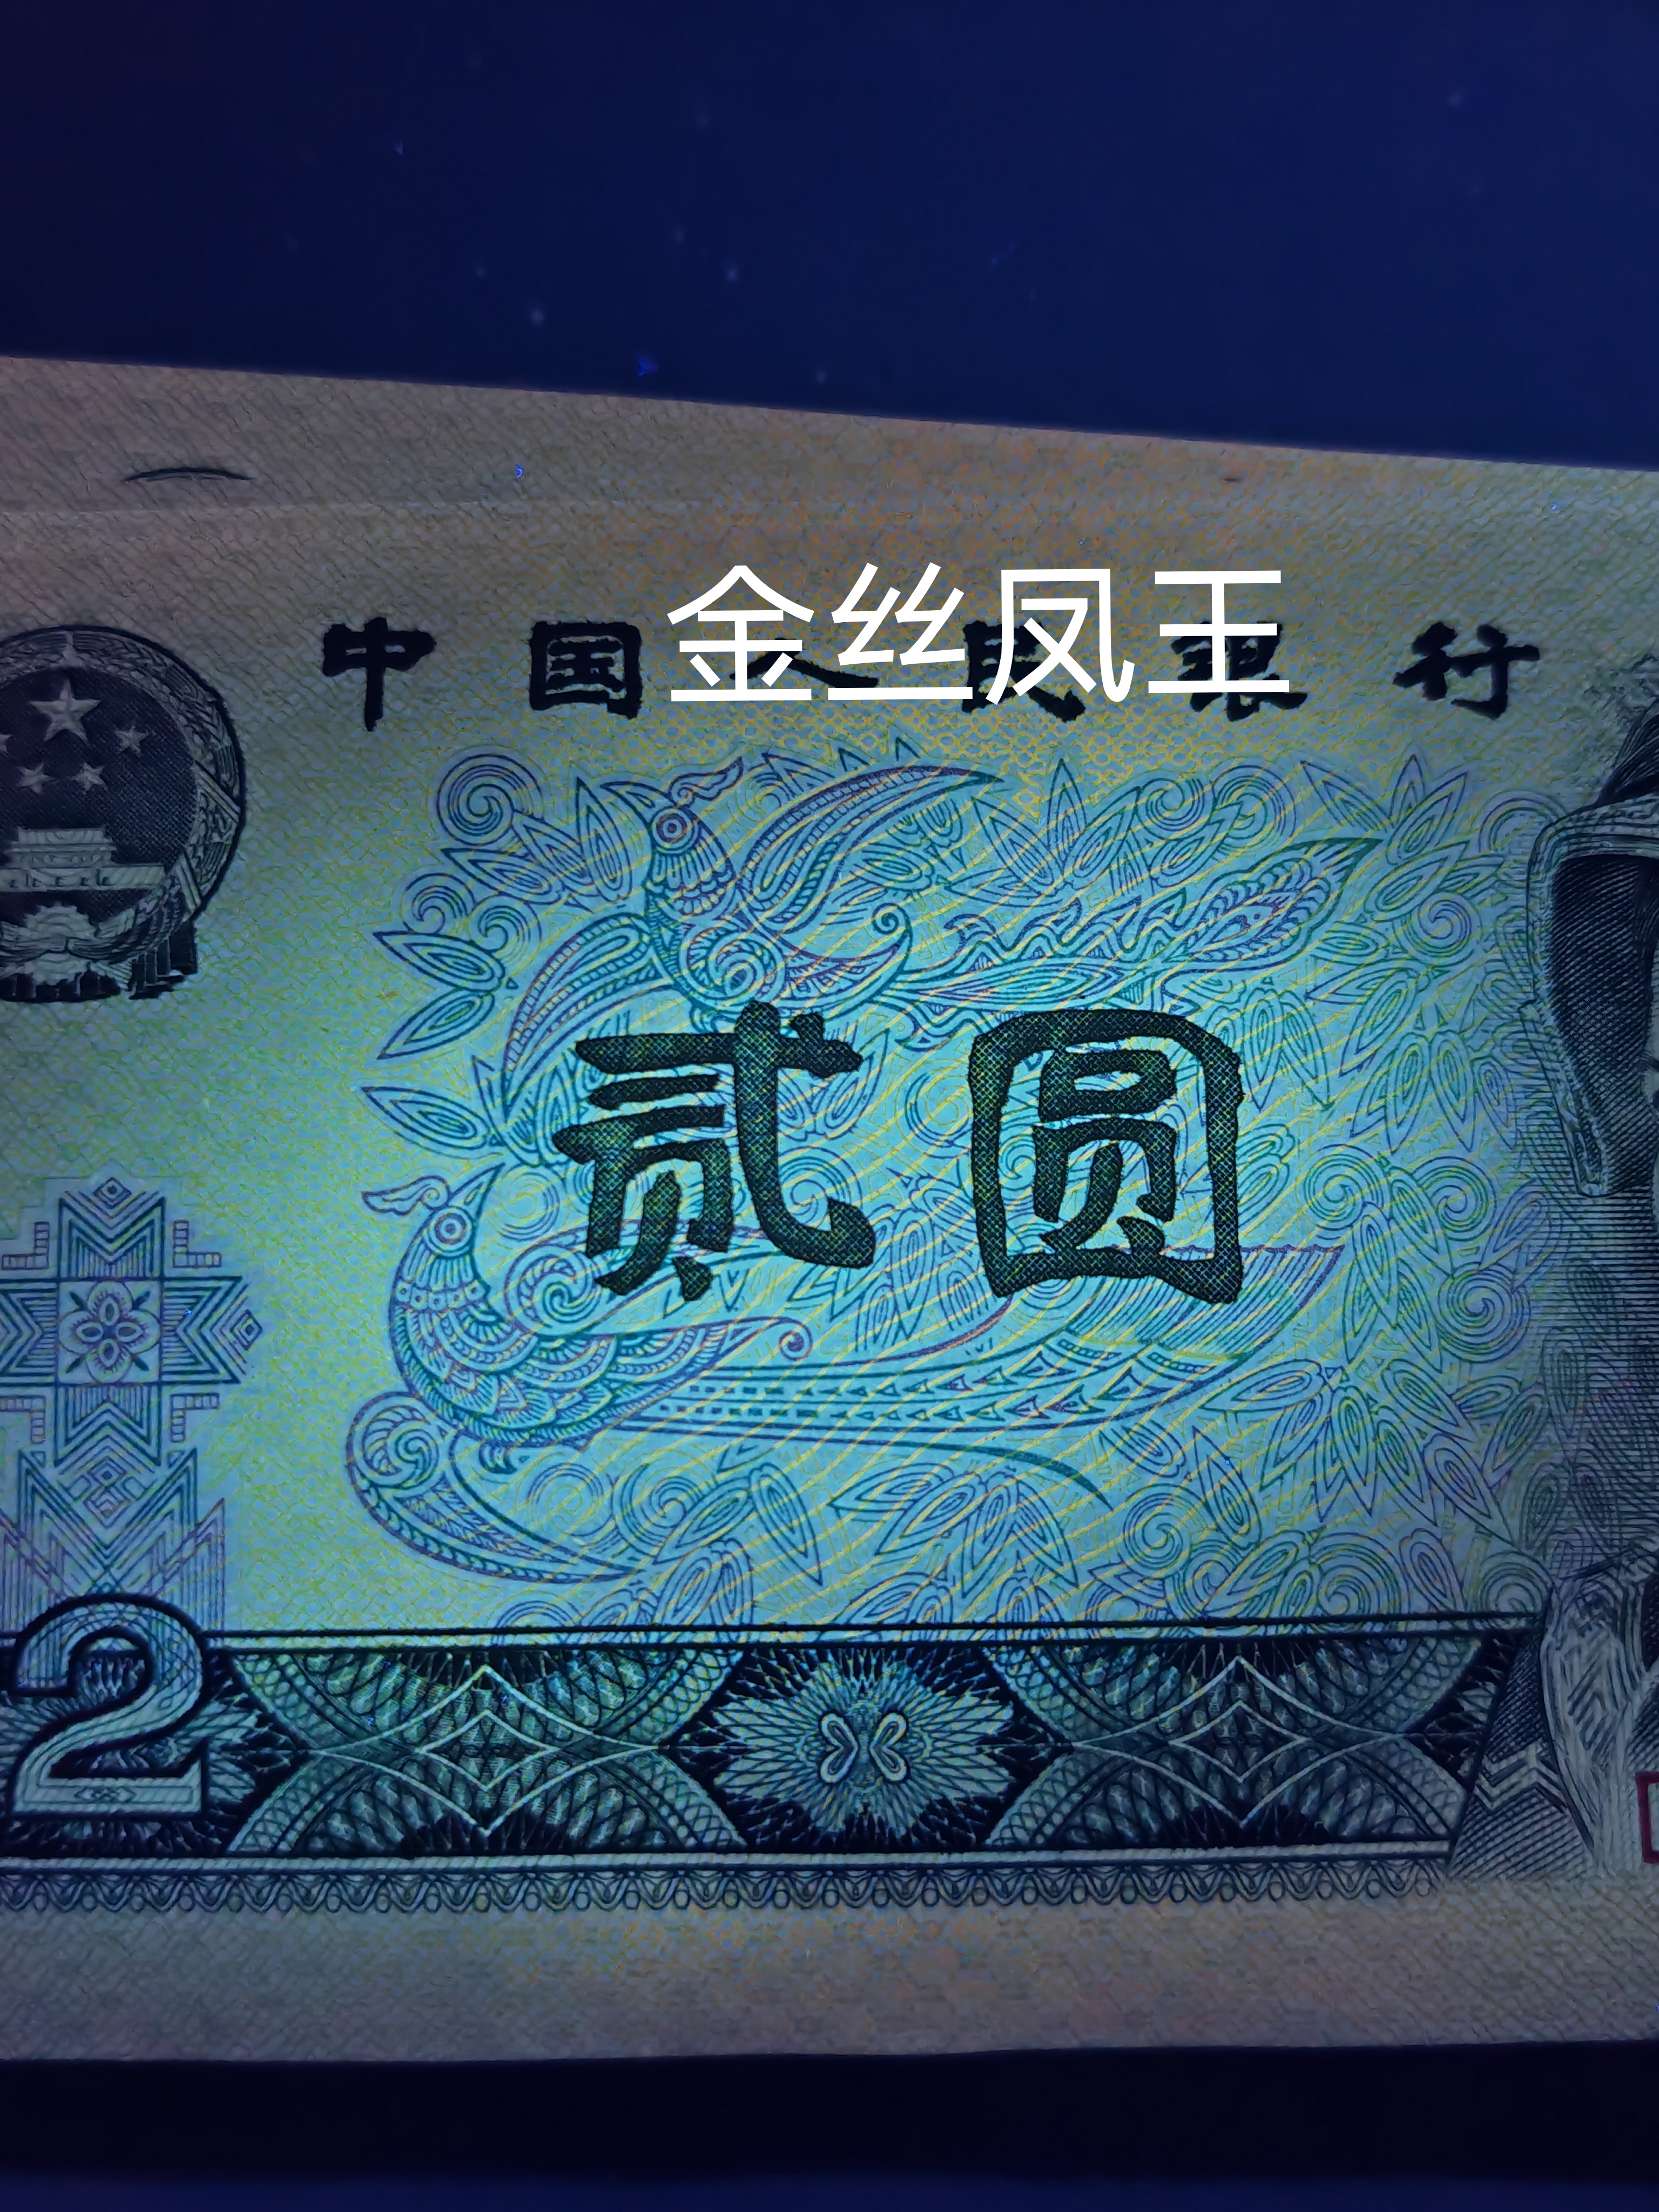 902纸币金凤朝阳冠号图片